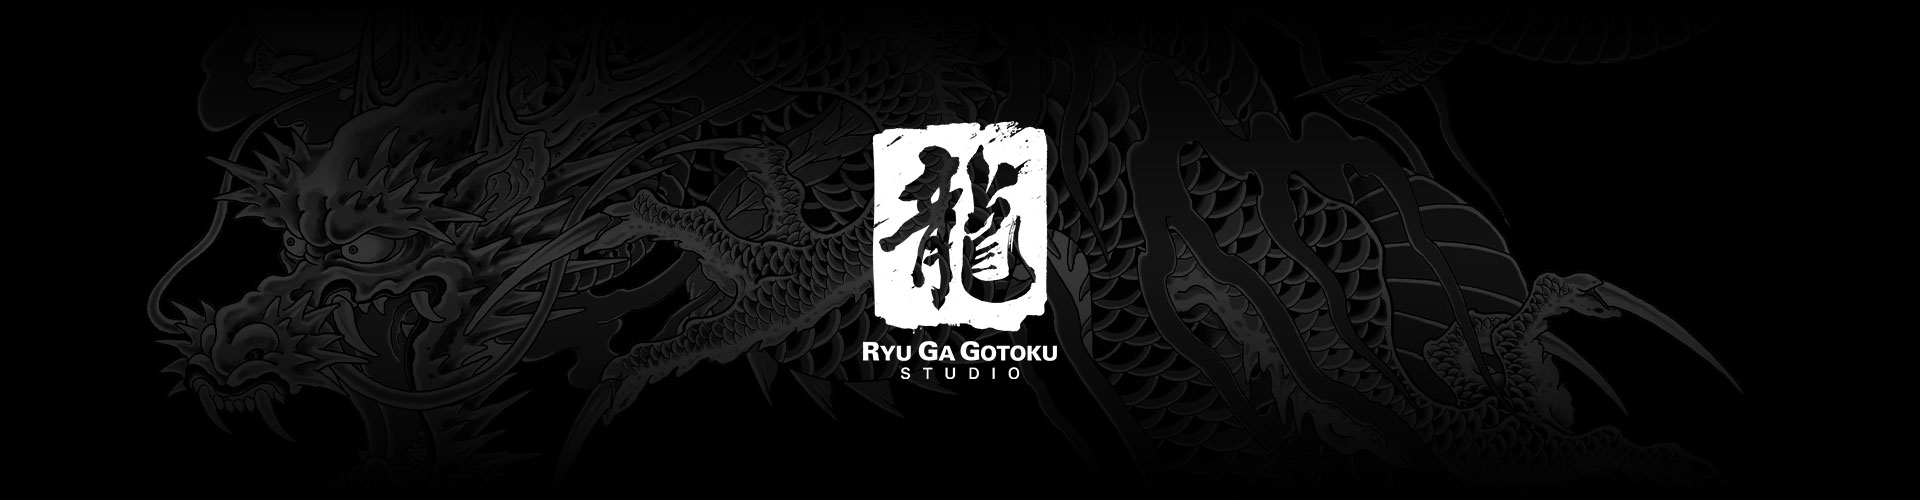 Ryu Ga Gotoku Studio-Logo mit einem grauen Drachentattoo-Hintergrund.